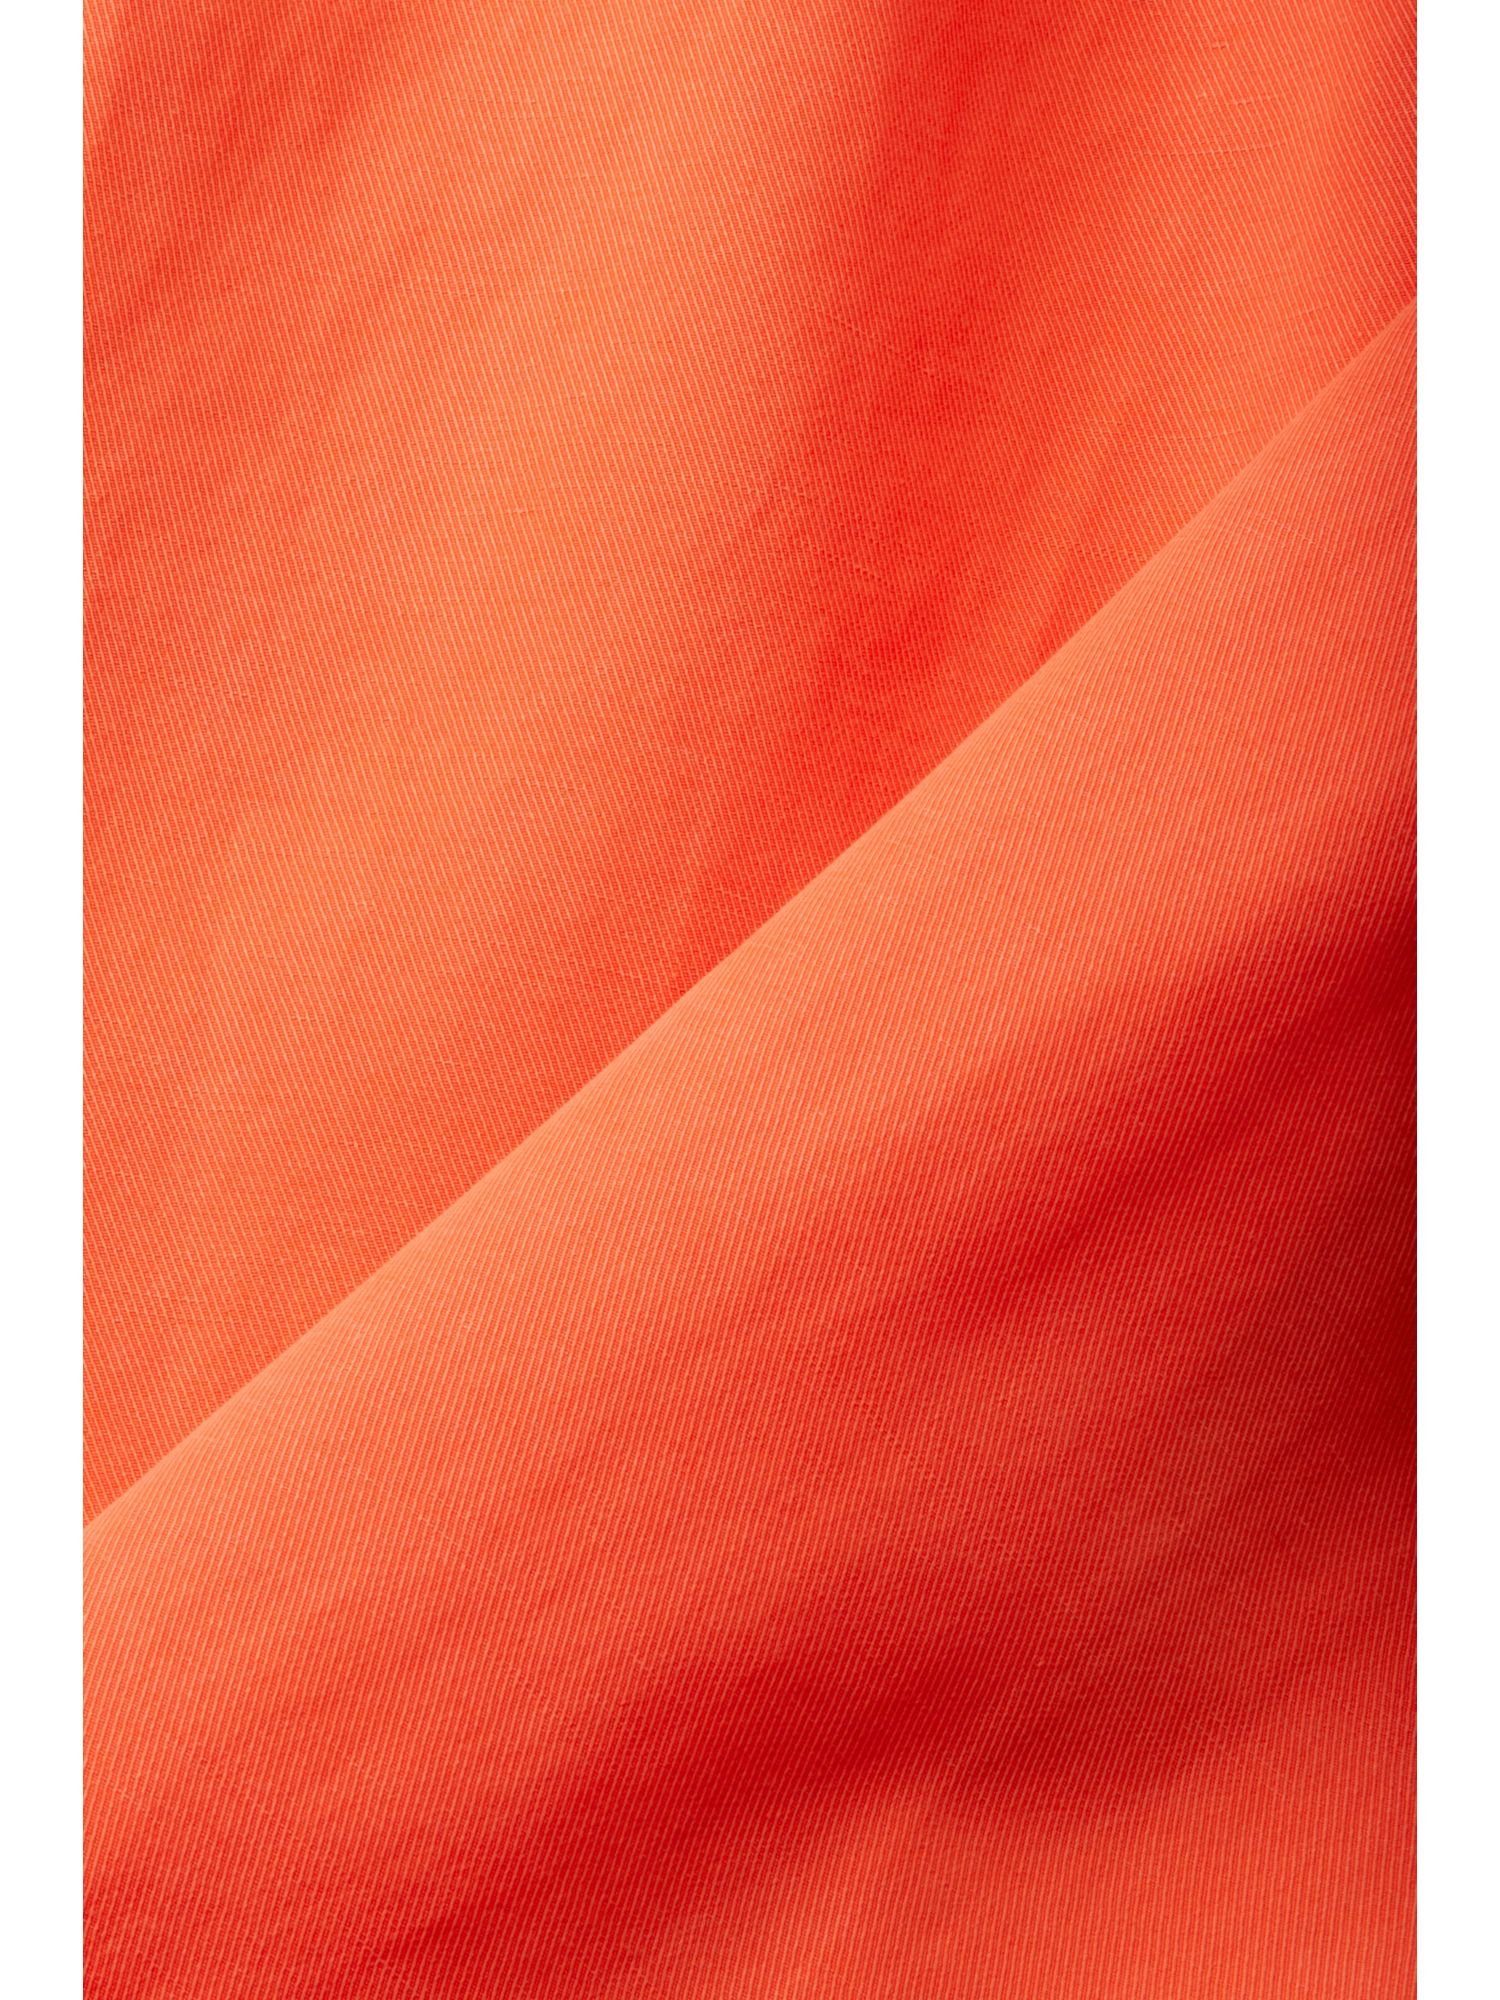 Esprit Collection Stoffhose Leinenmix-Hose mit hohem ORANGE Gürtel und Bund RED